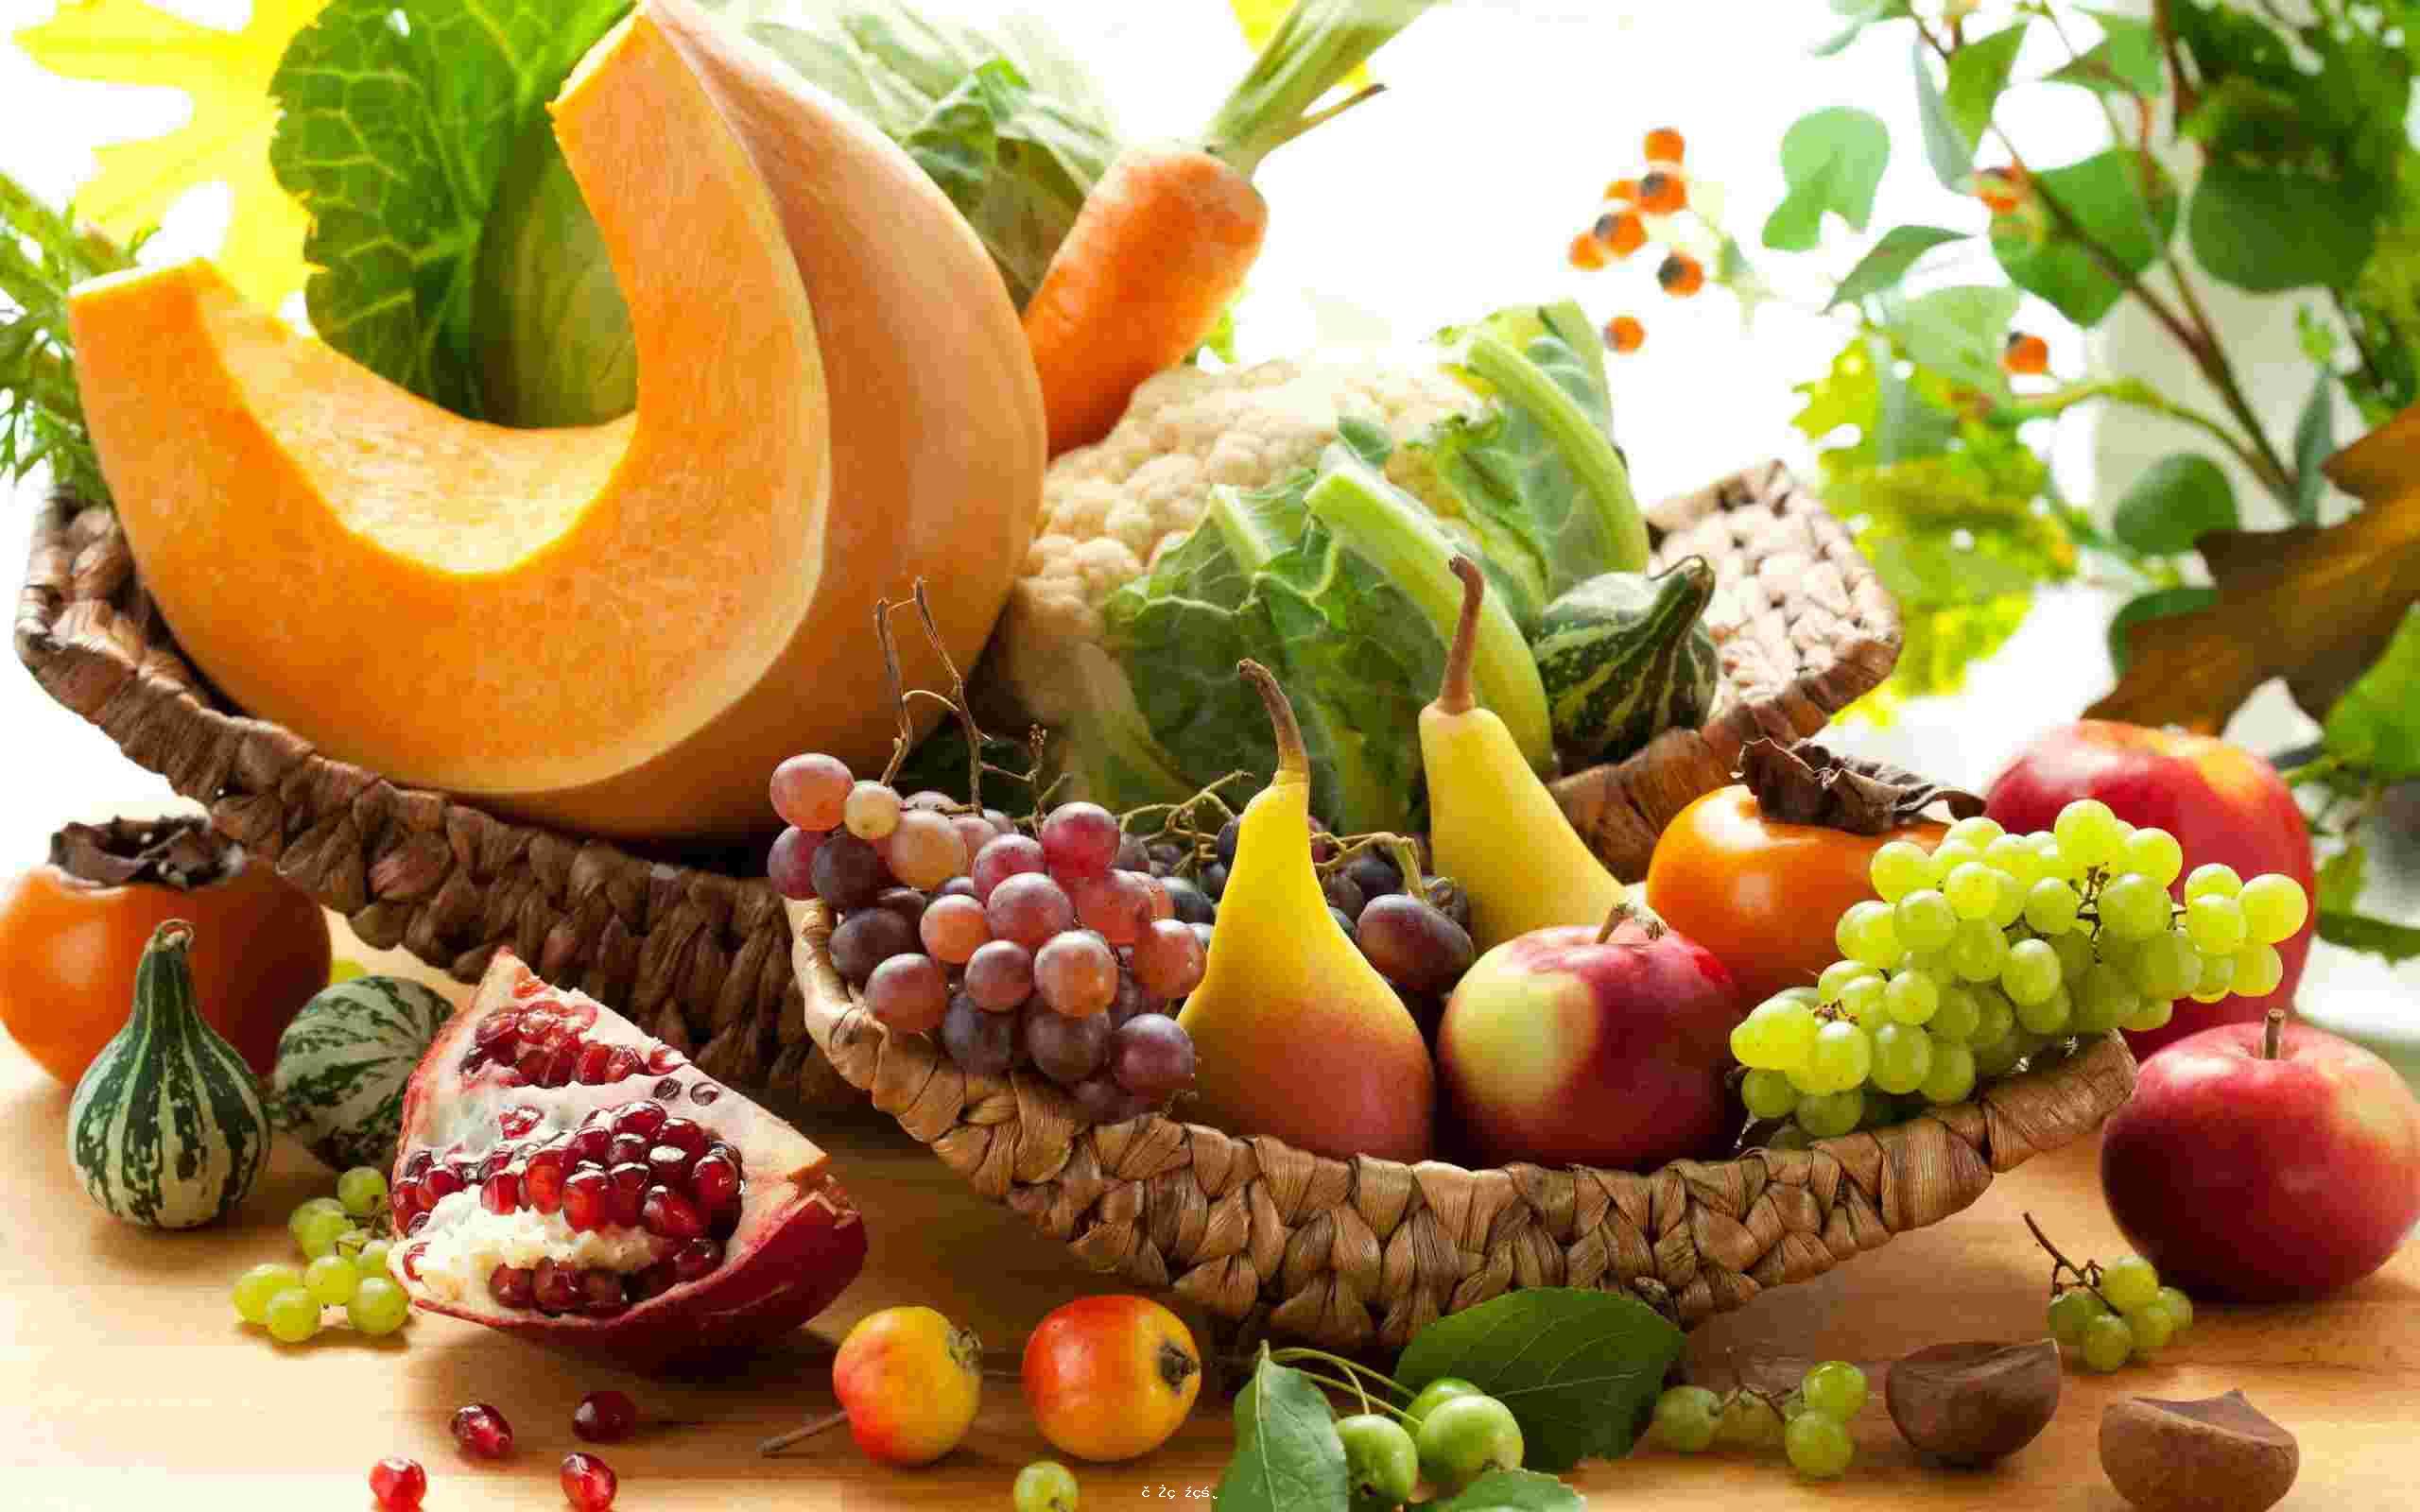 美國註冊營養師推薦最適合冬天吃的八種水果 